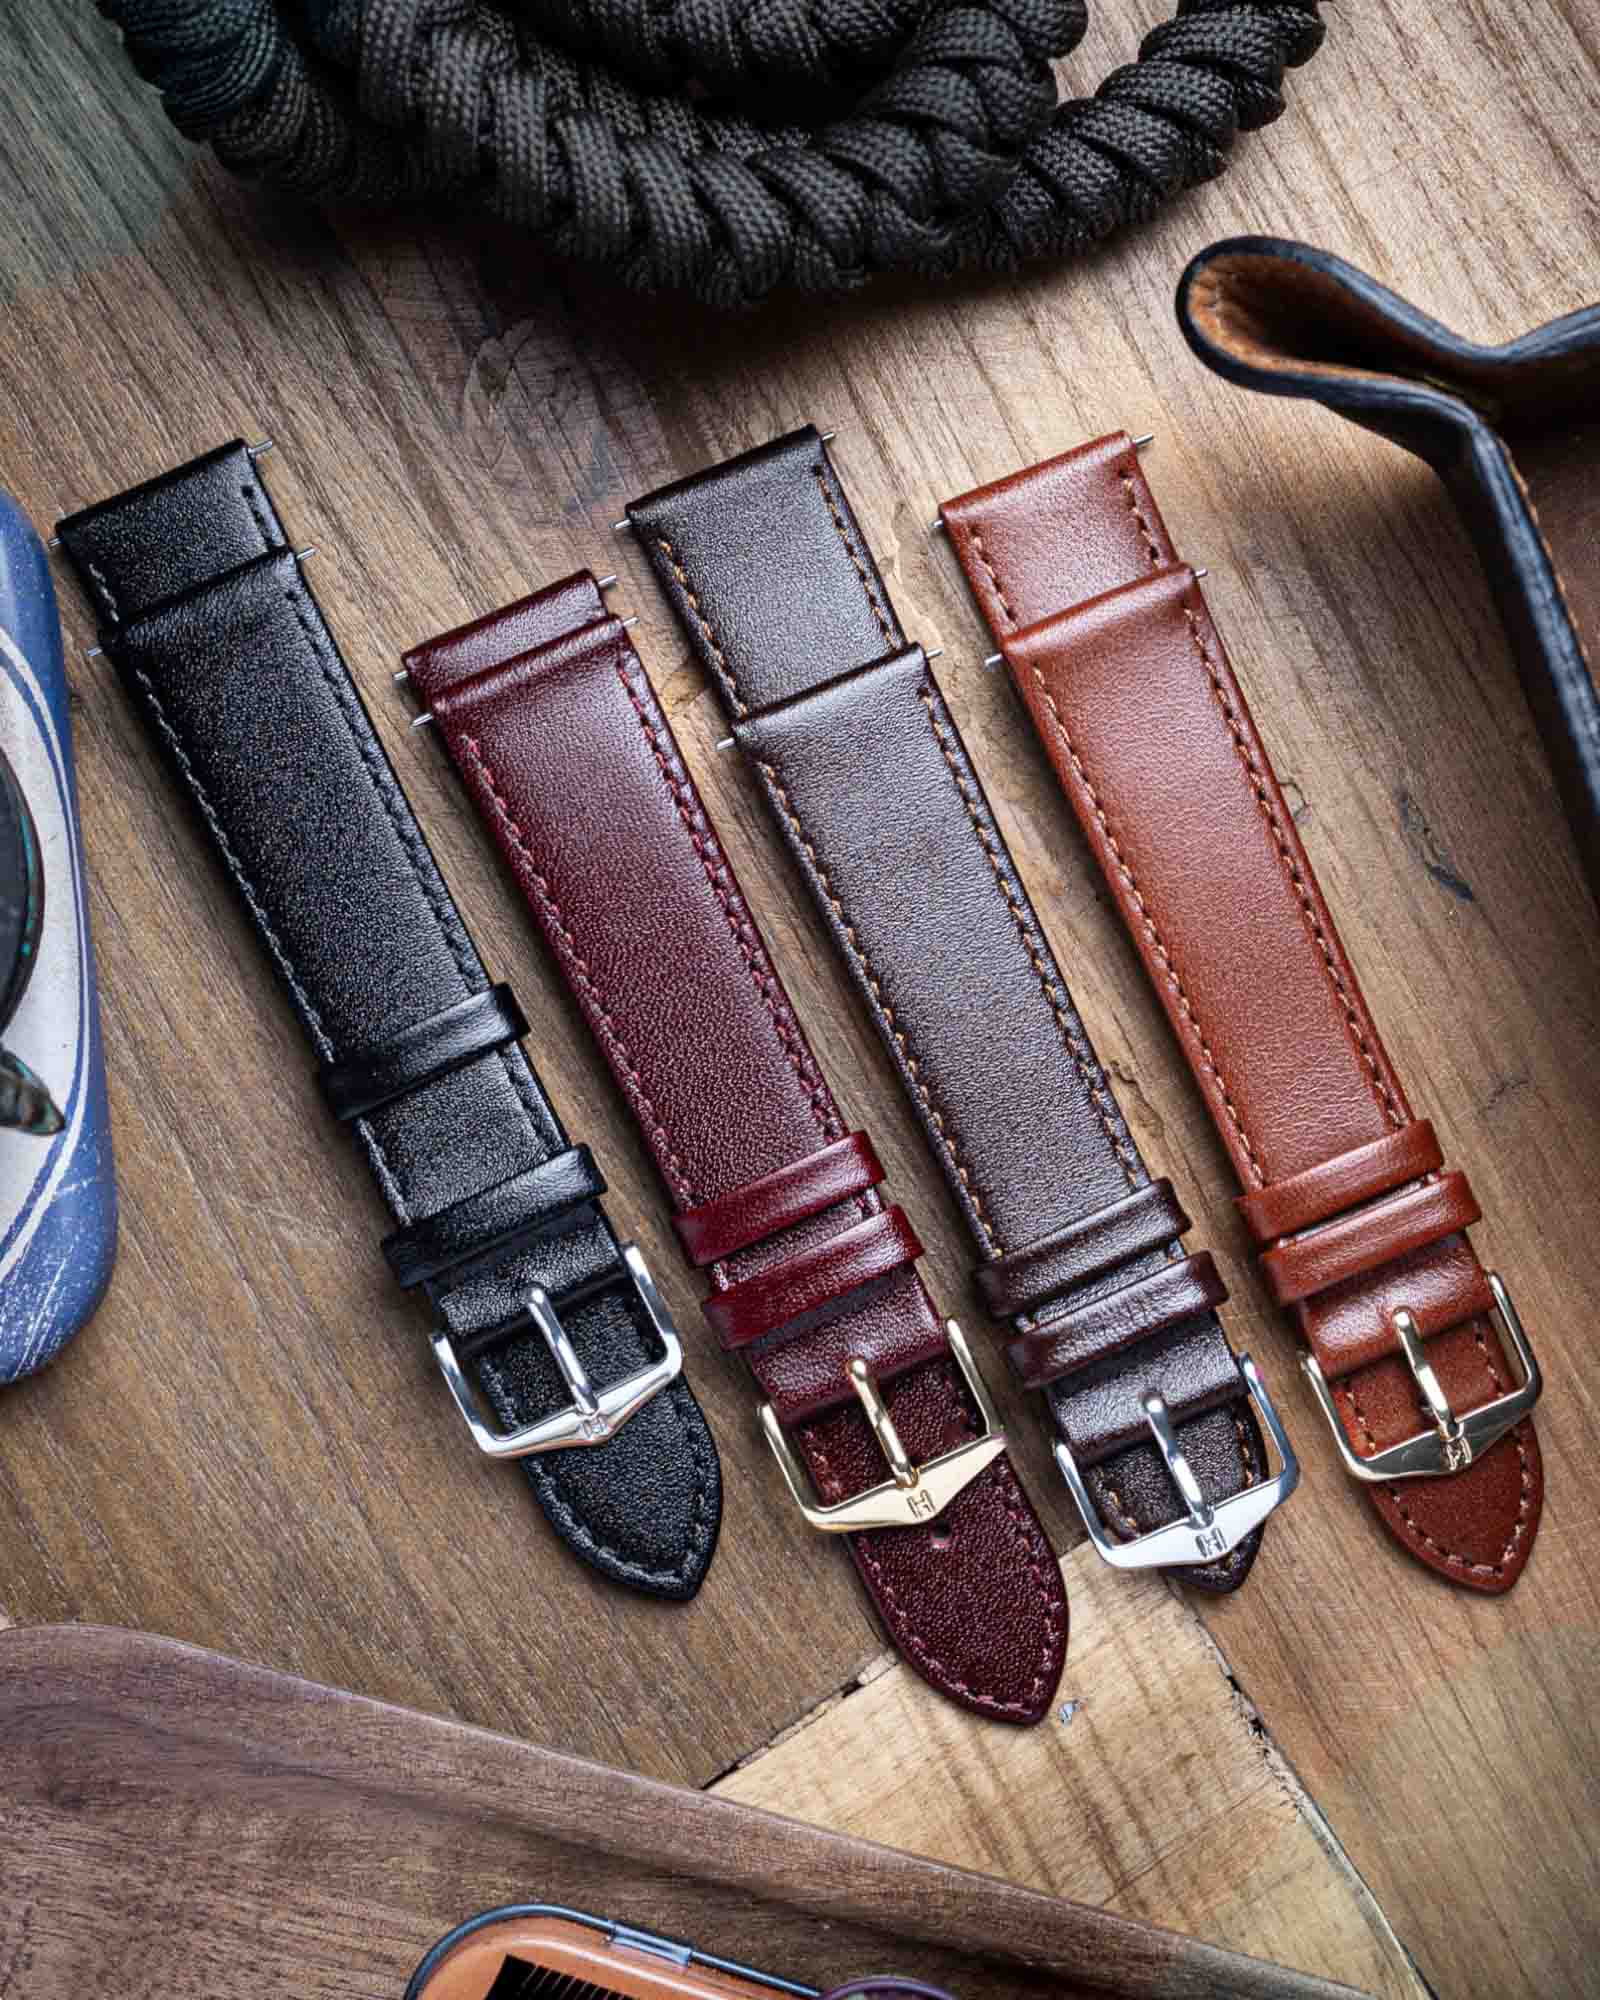 Hirsch OSIRIS Brown Calf Leather Watch Strap